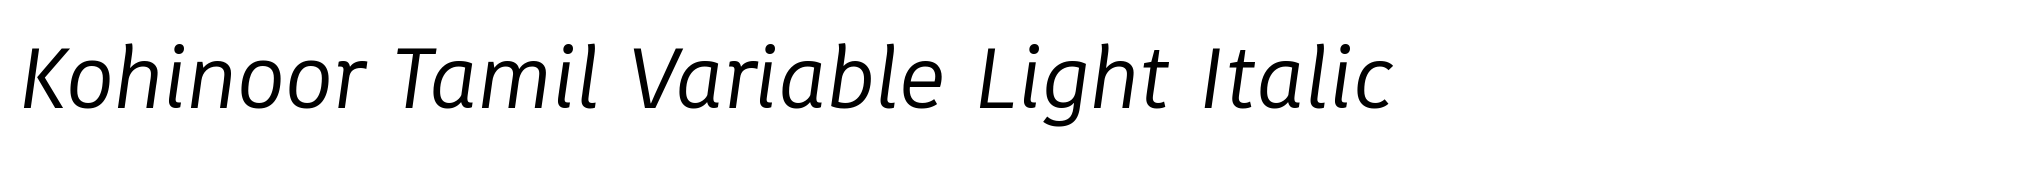 Kohinoor Tamil Variable Light Italic image